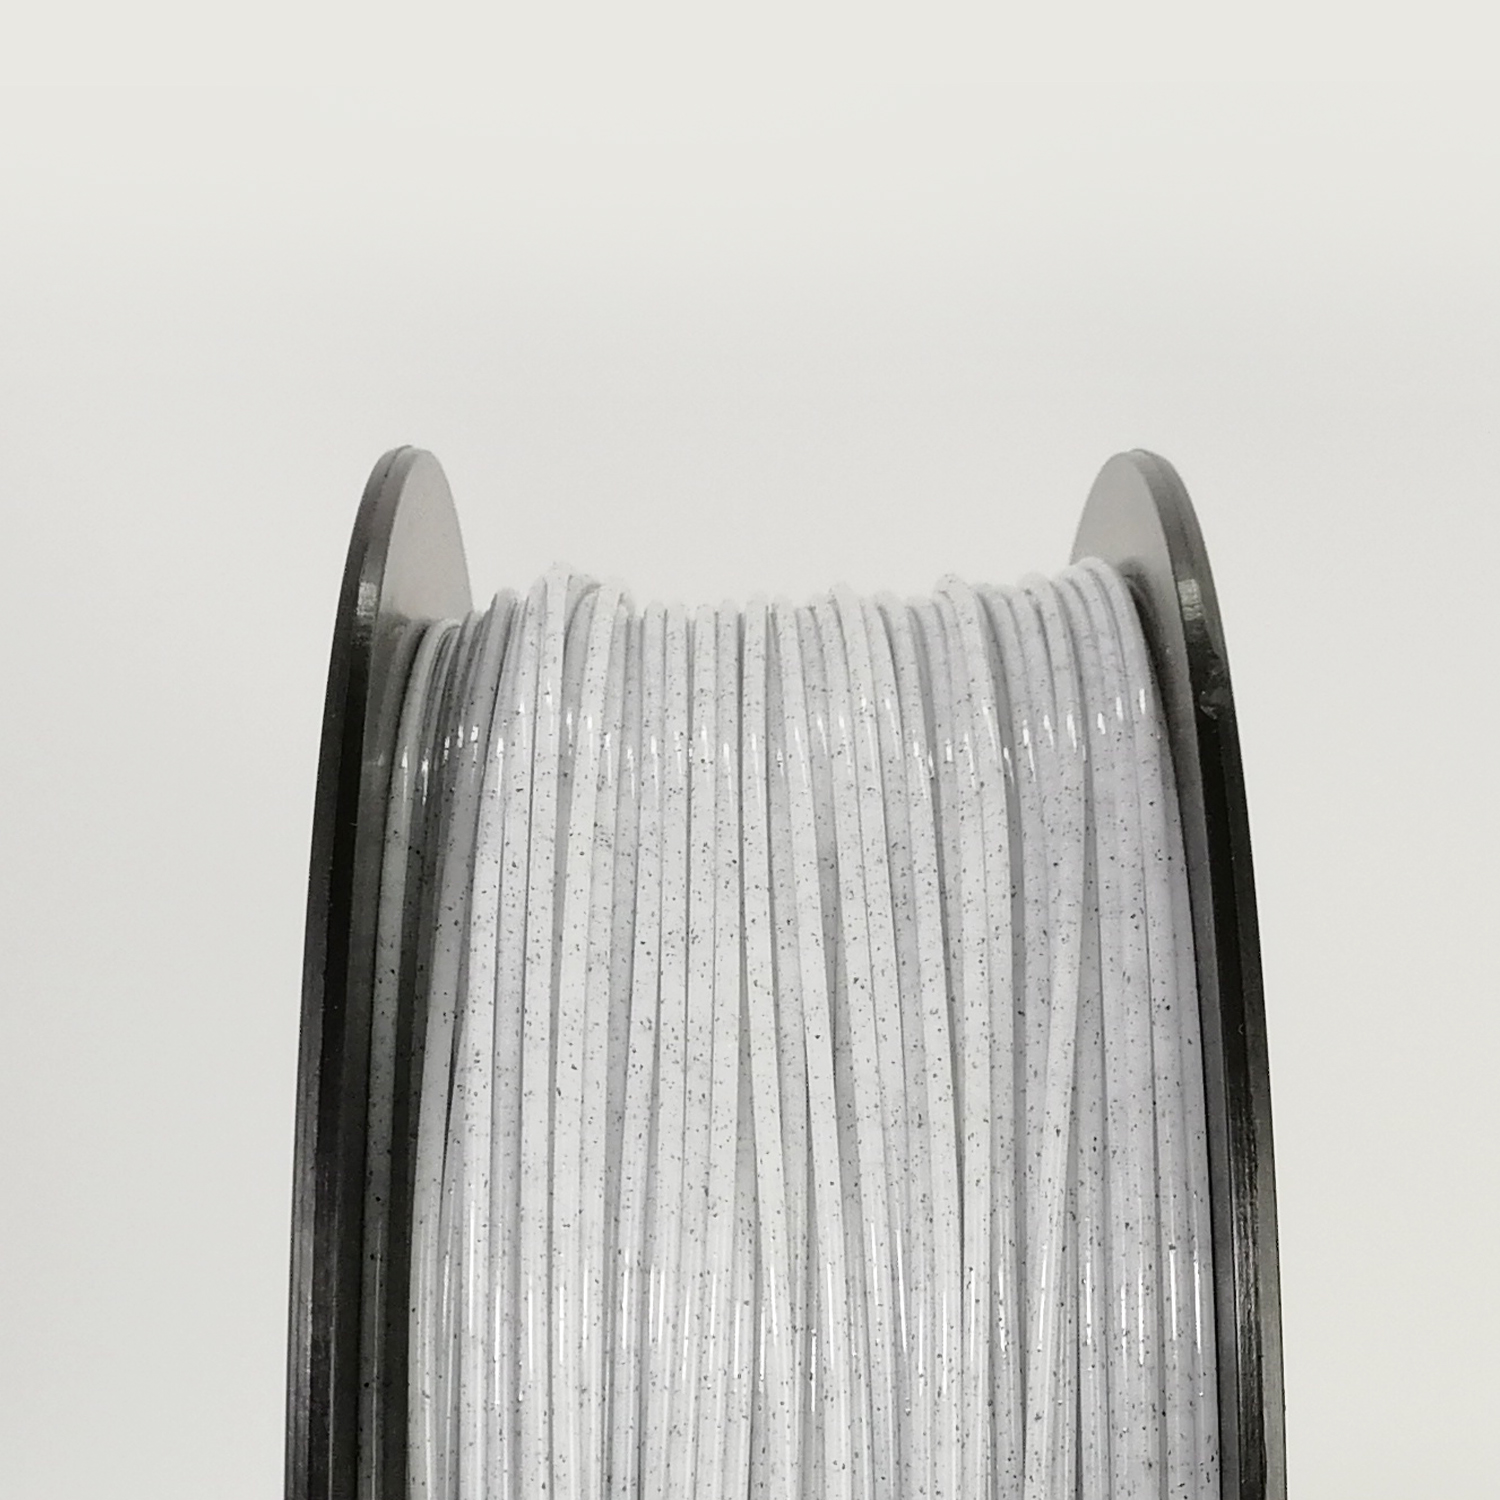 PLA Marbre 1.75 – 1kg – 3D CréaPrint